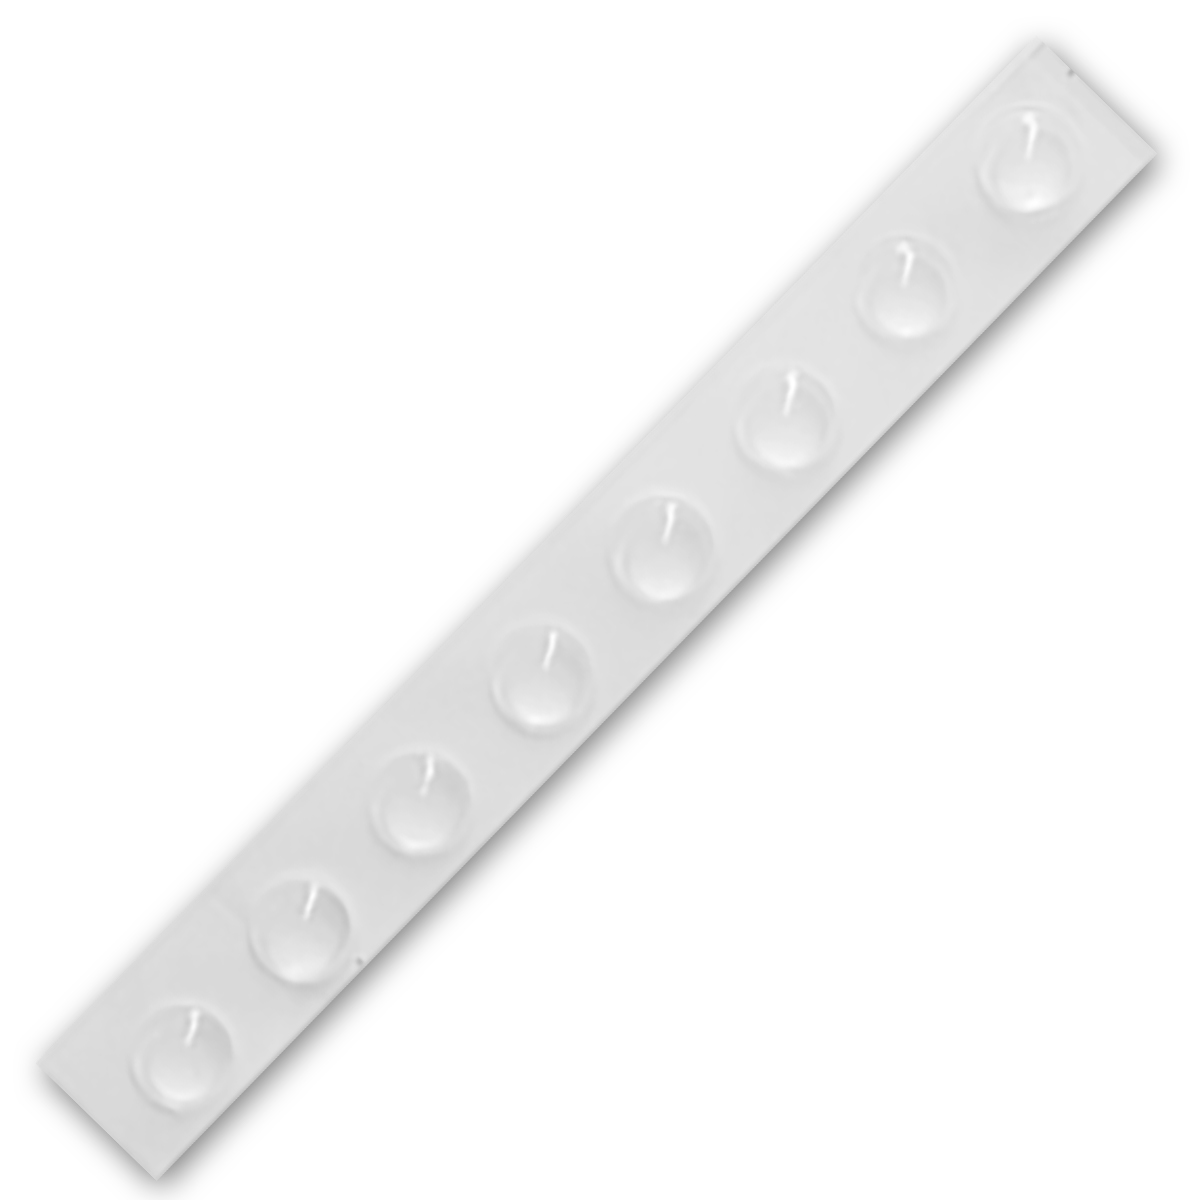 8 elastic pads for Magnet Holder